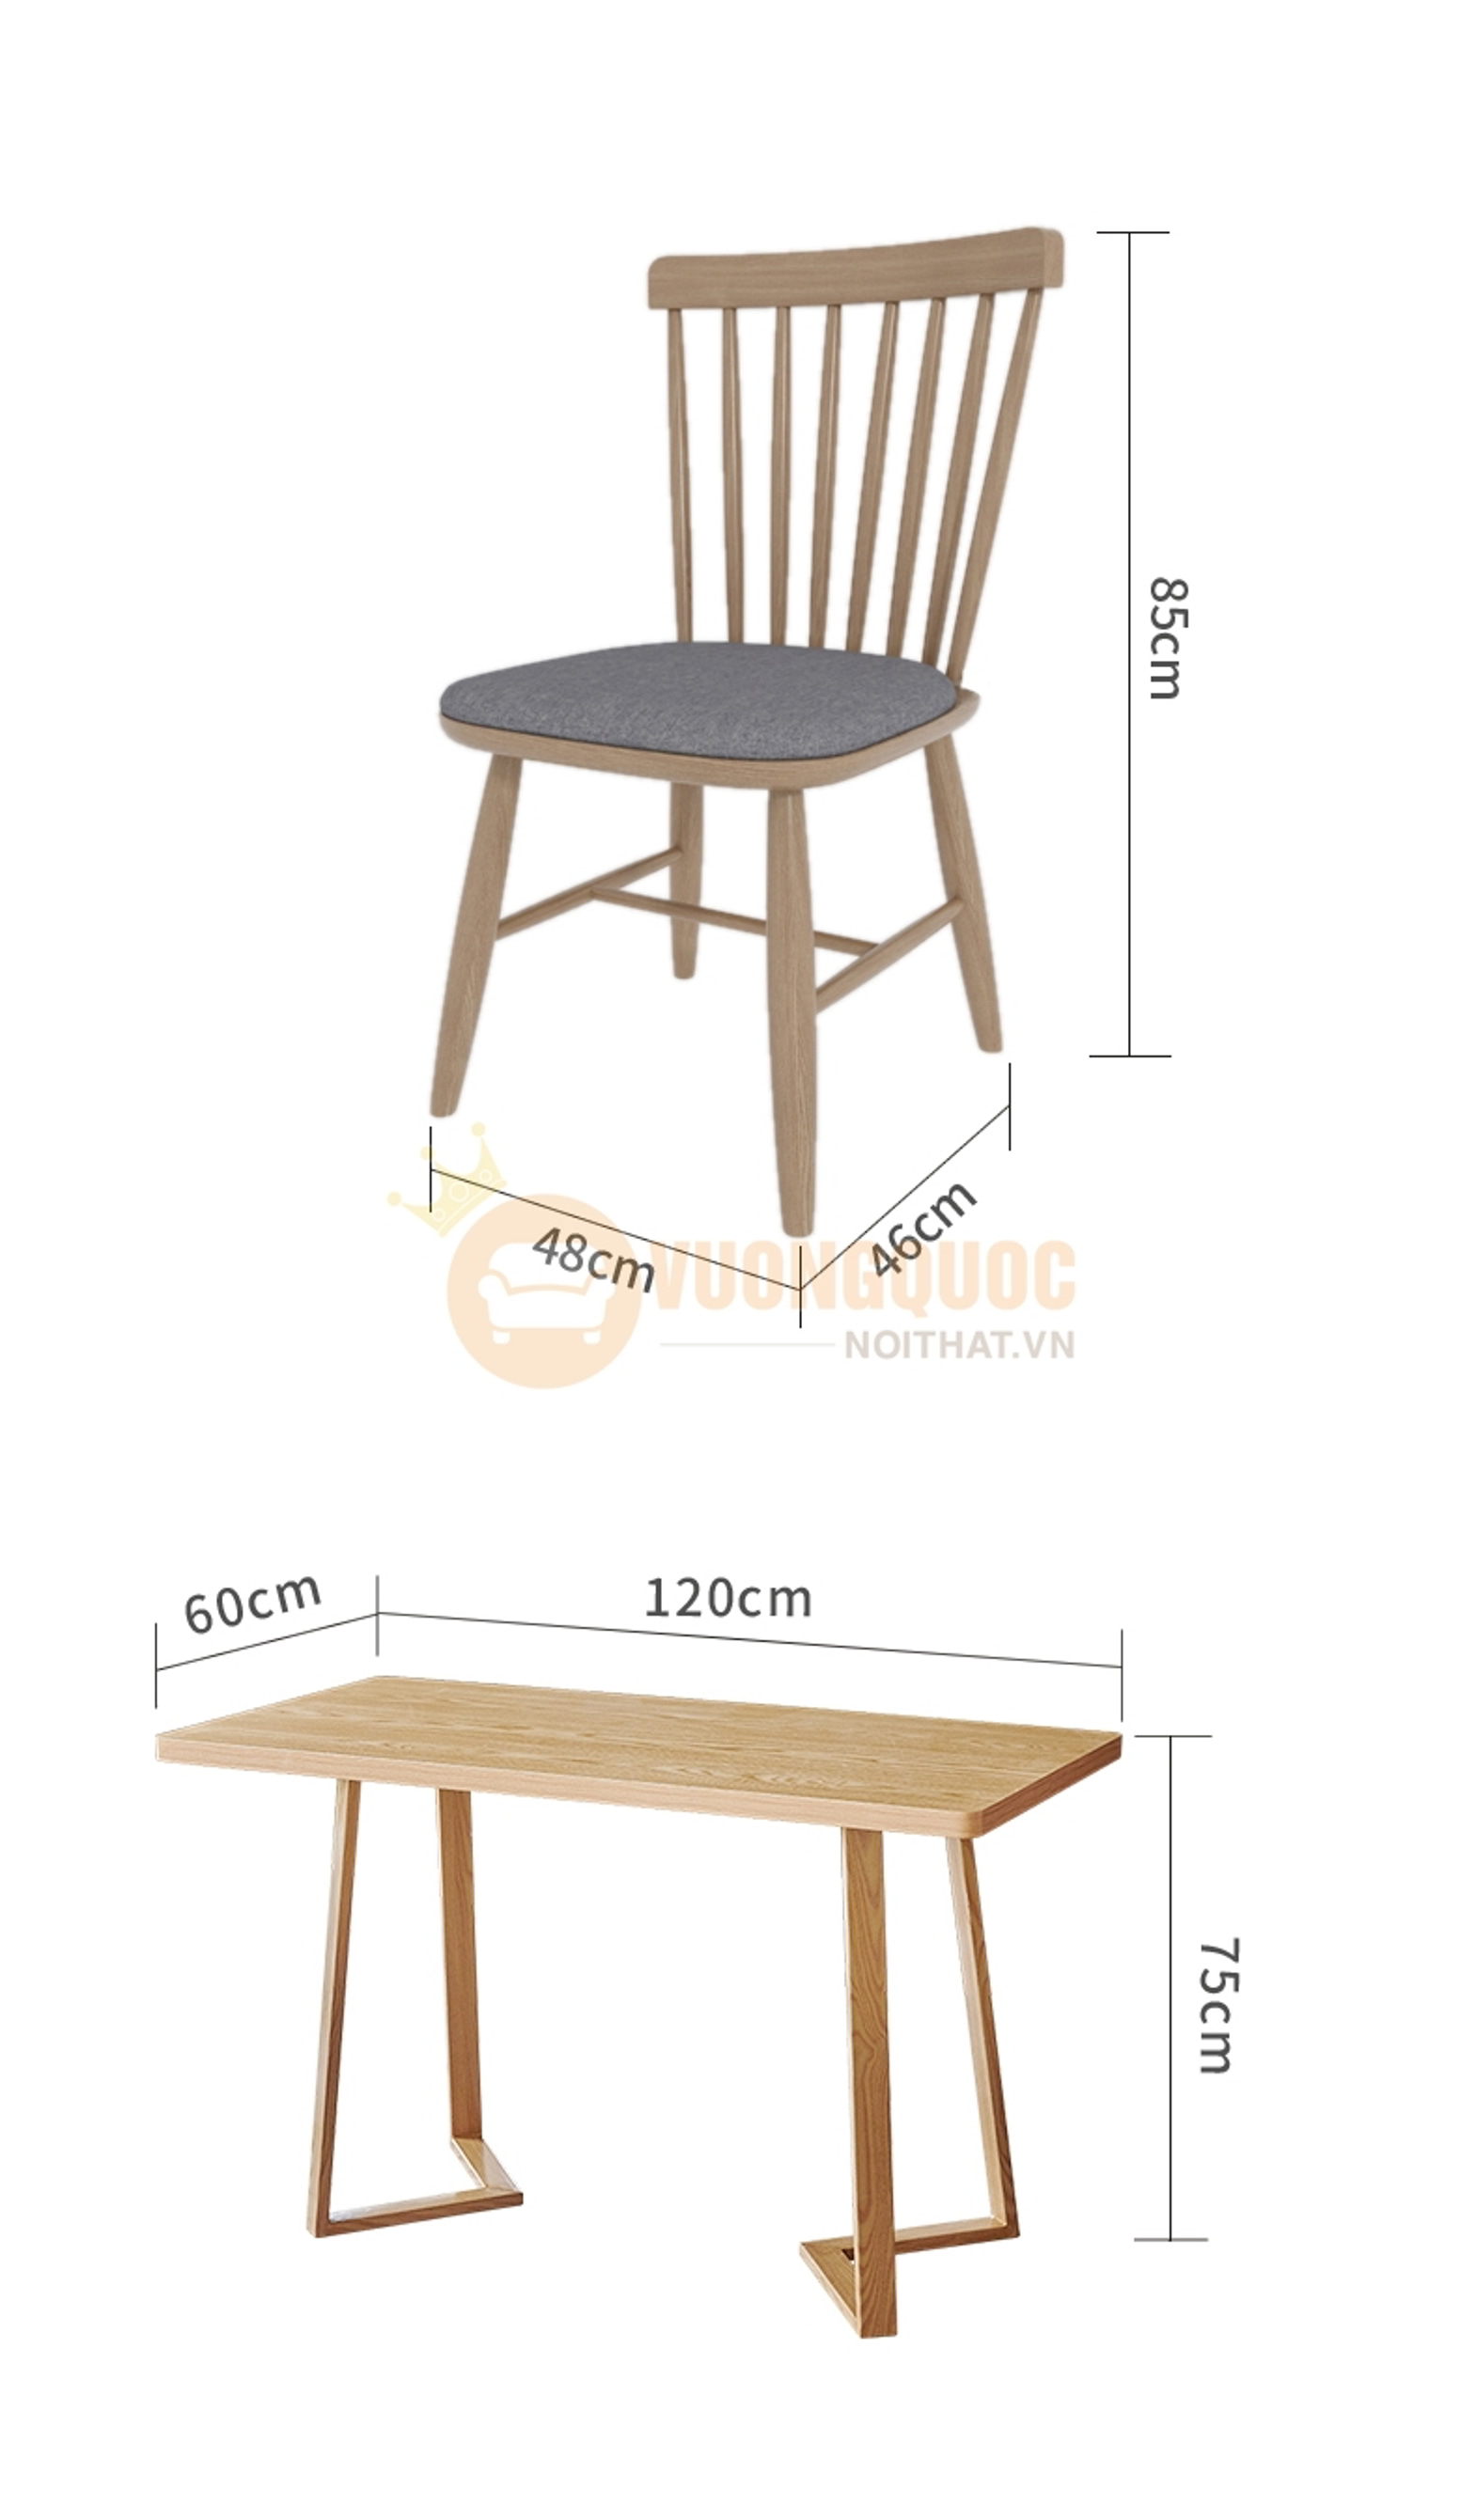 Bộ bàn ghế nhà hàng trang nhã hiện đại HOY7005 kích thước ghế và bàn dài